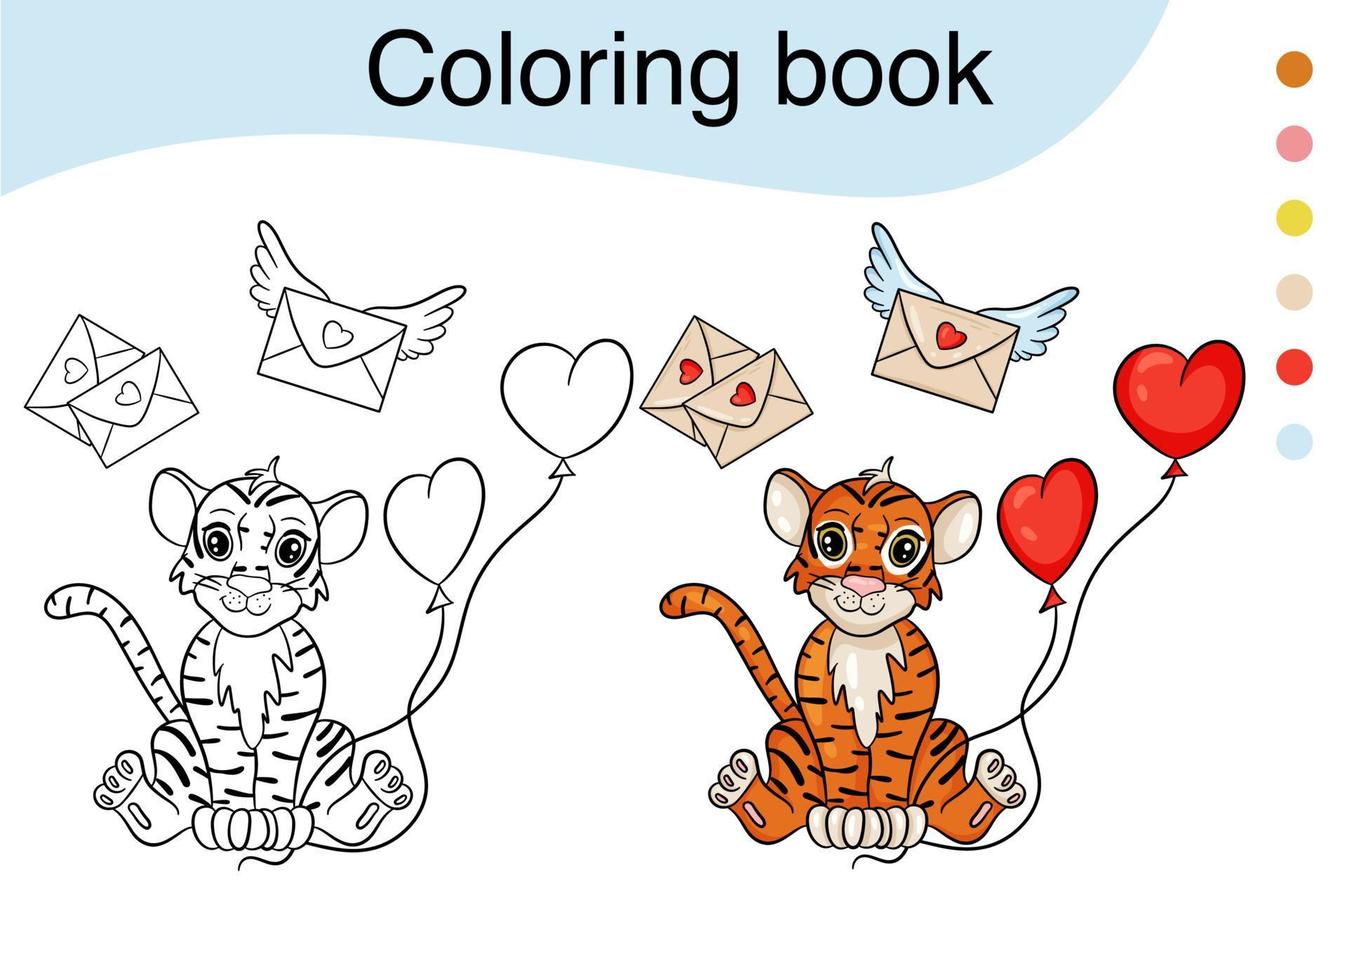 tijger. zwart-wit afbeelding voor een kleurboek. het symbool van het nieuwe jaar volgens de chinese kalender. vector cartoon stijl